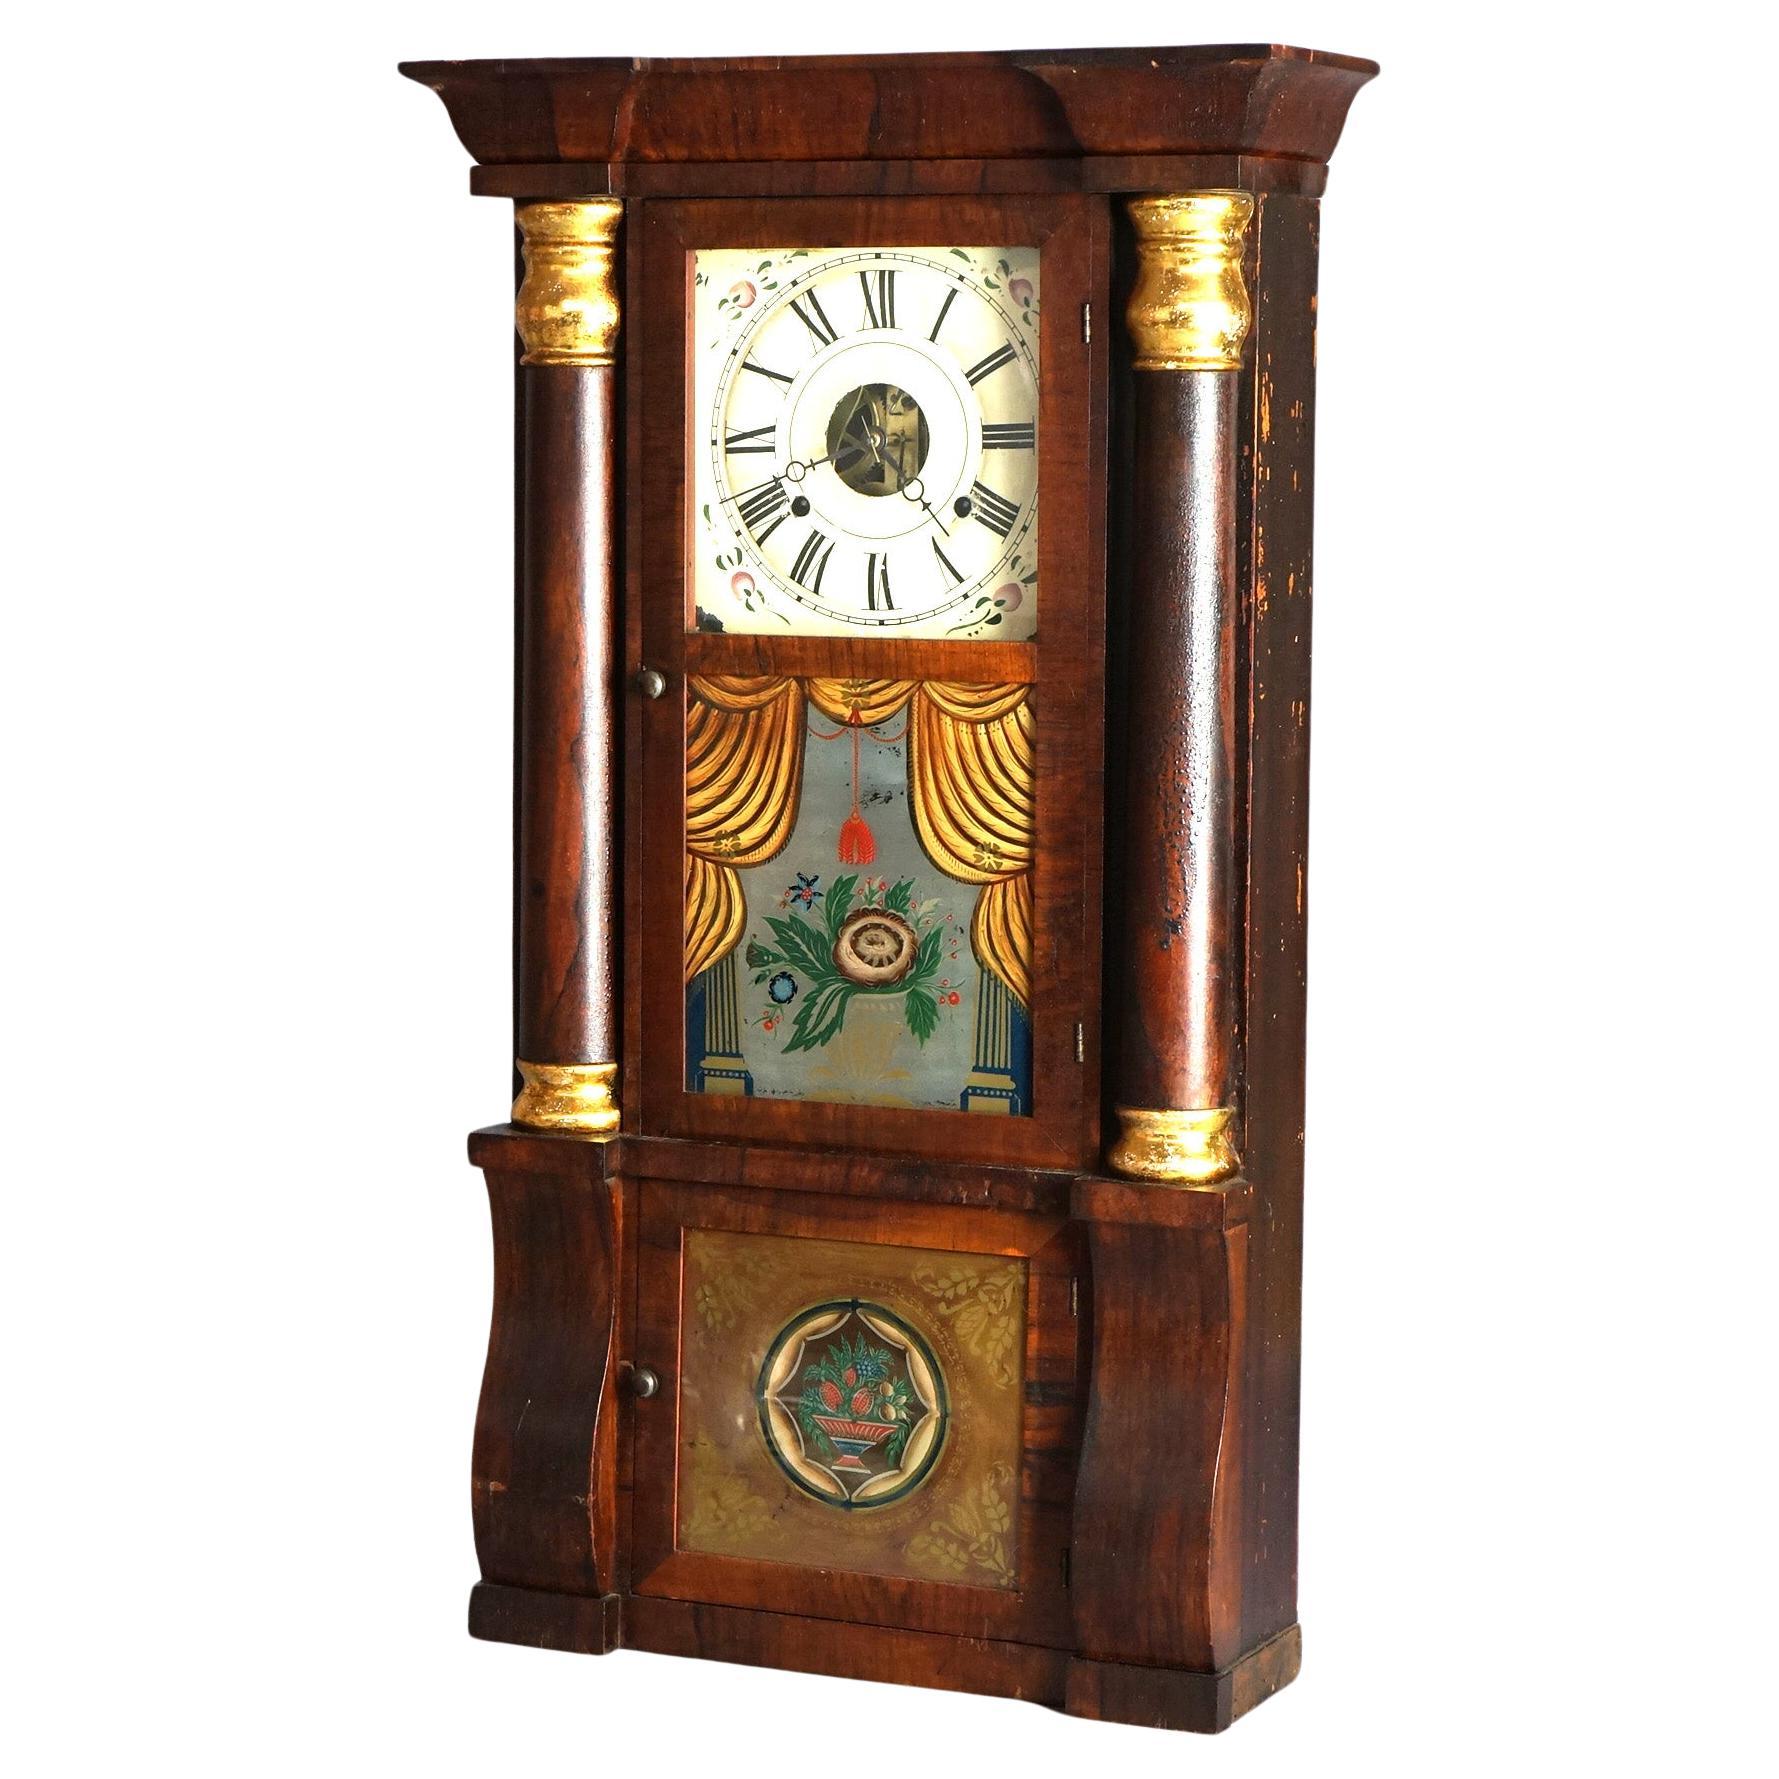 How do I date a Seth Thomas mantel clock?